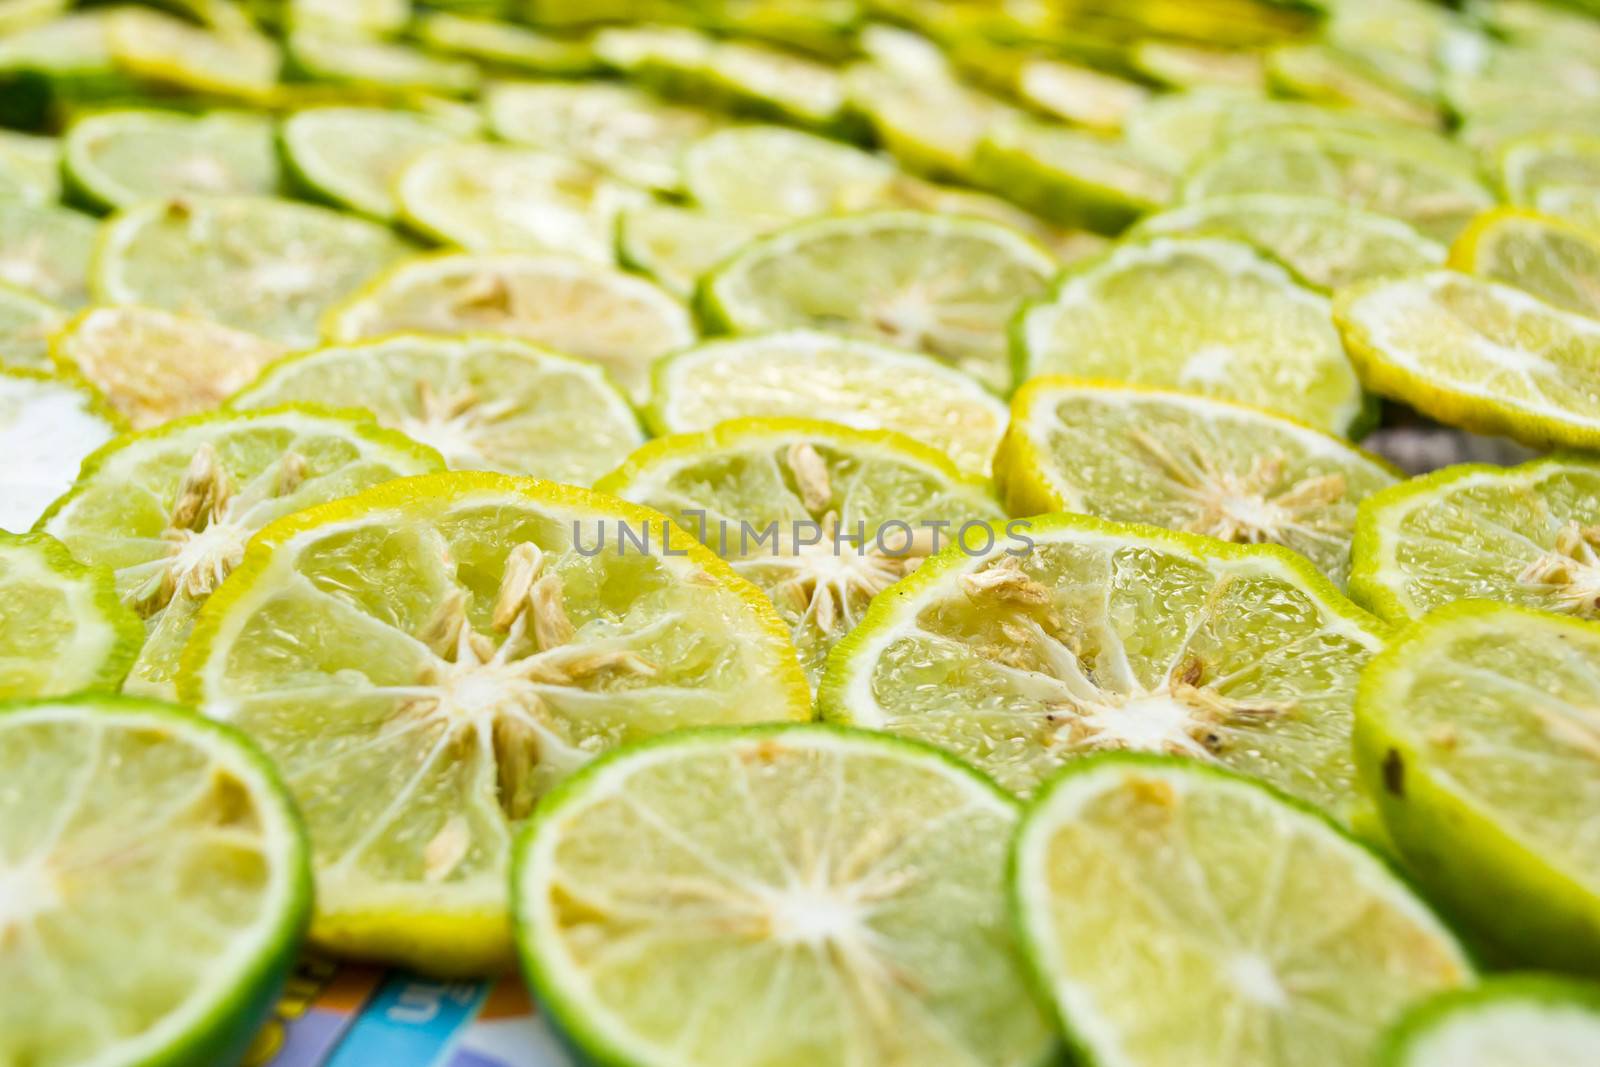 Close-up of fruit lemon slices by Thanamat